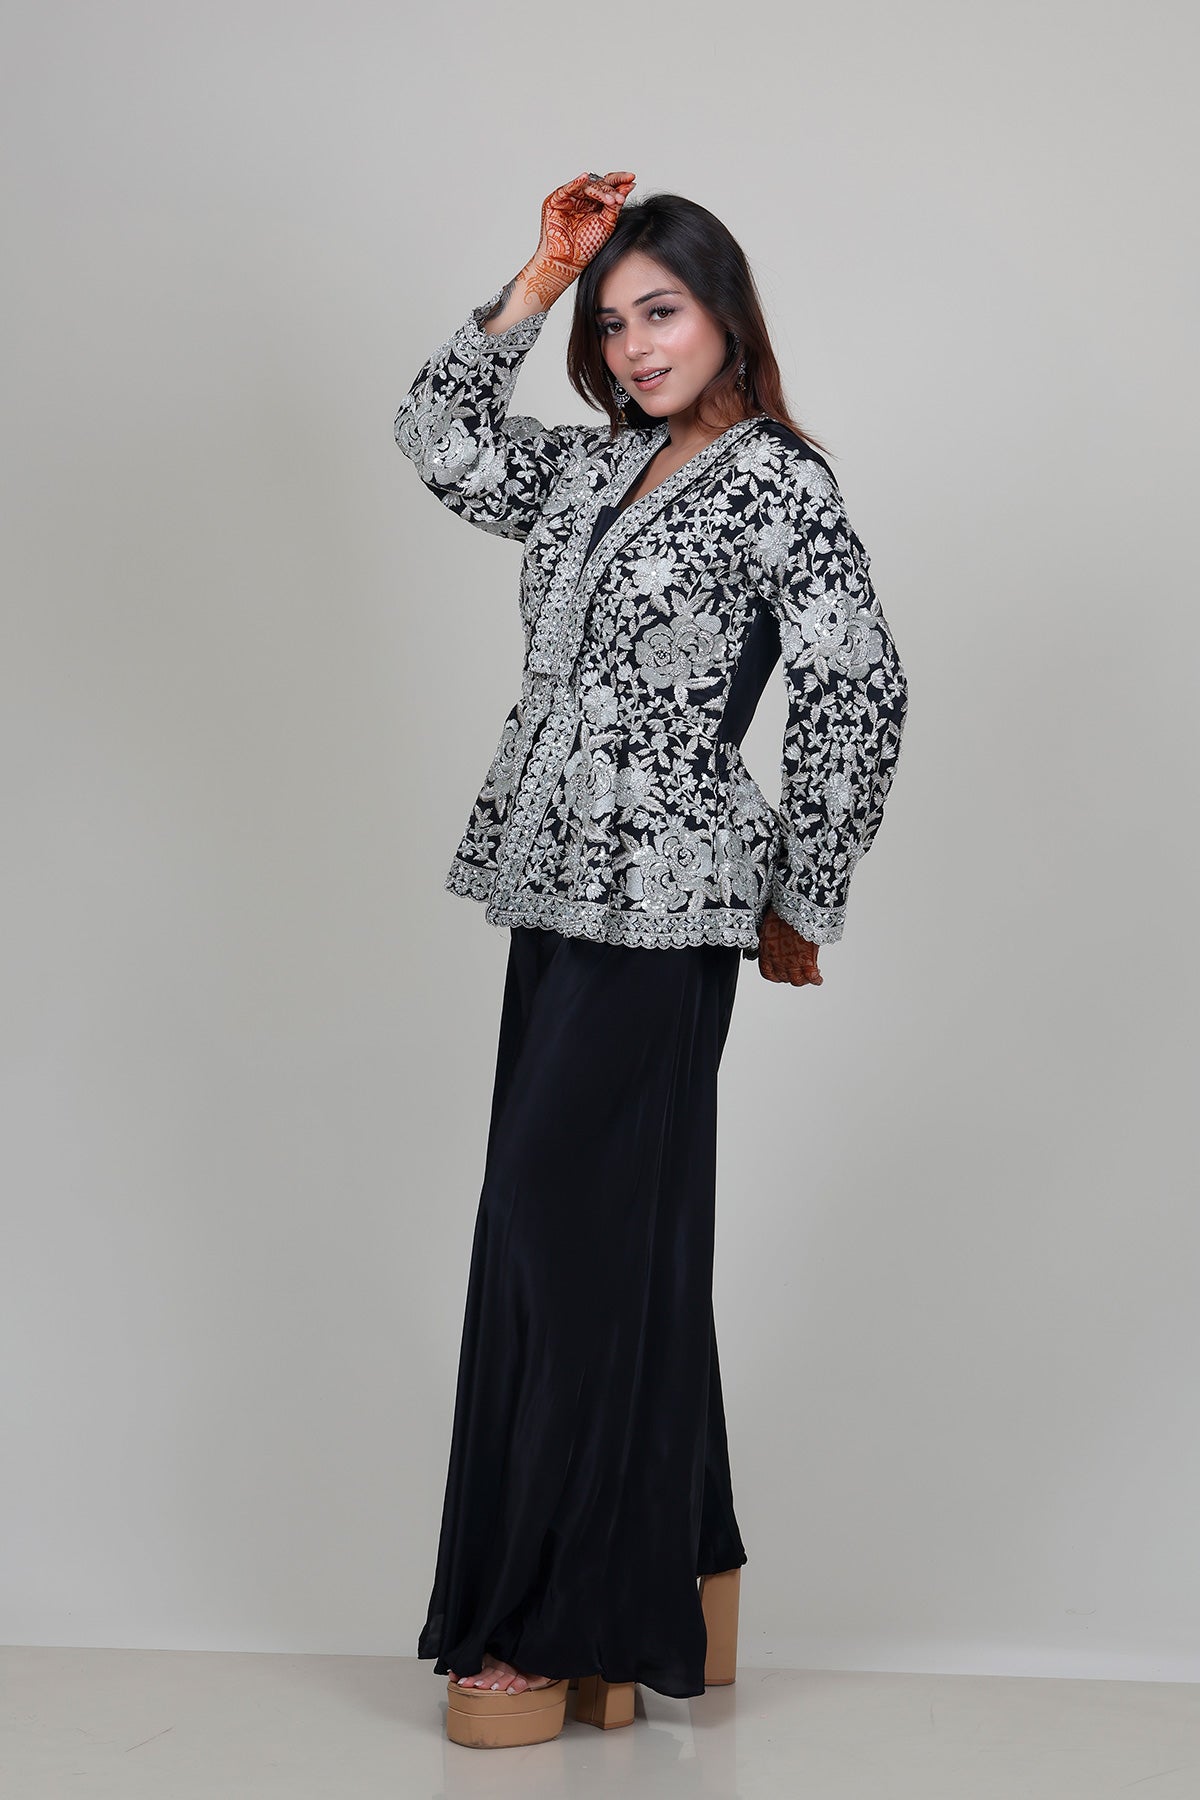 Black Sharara Suit with peplum Top